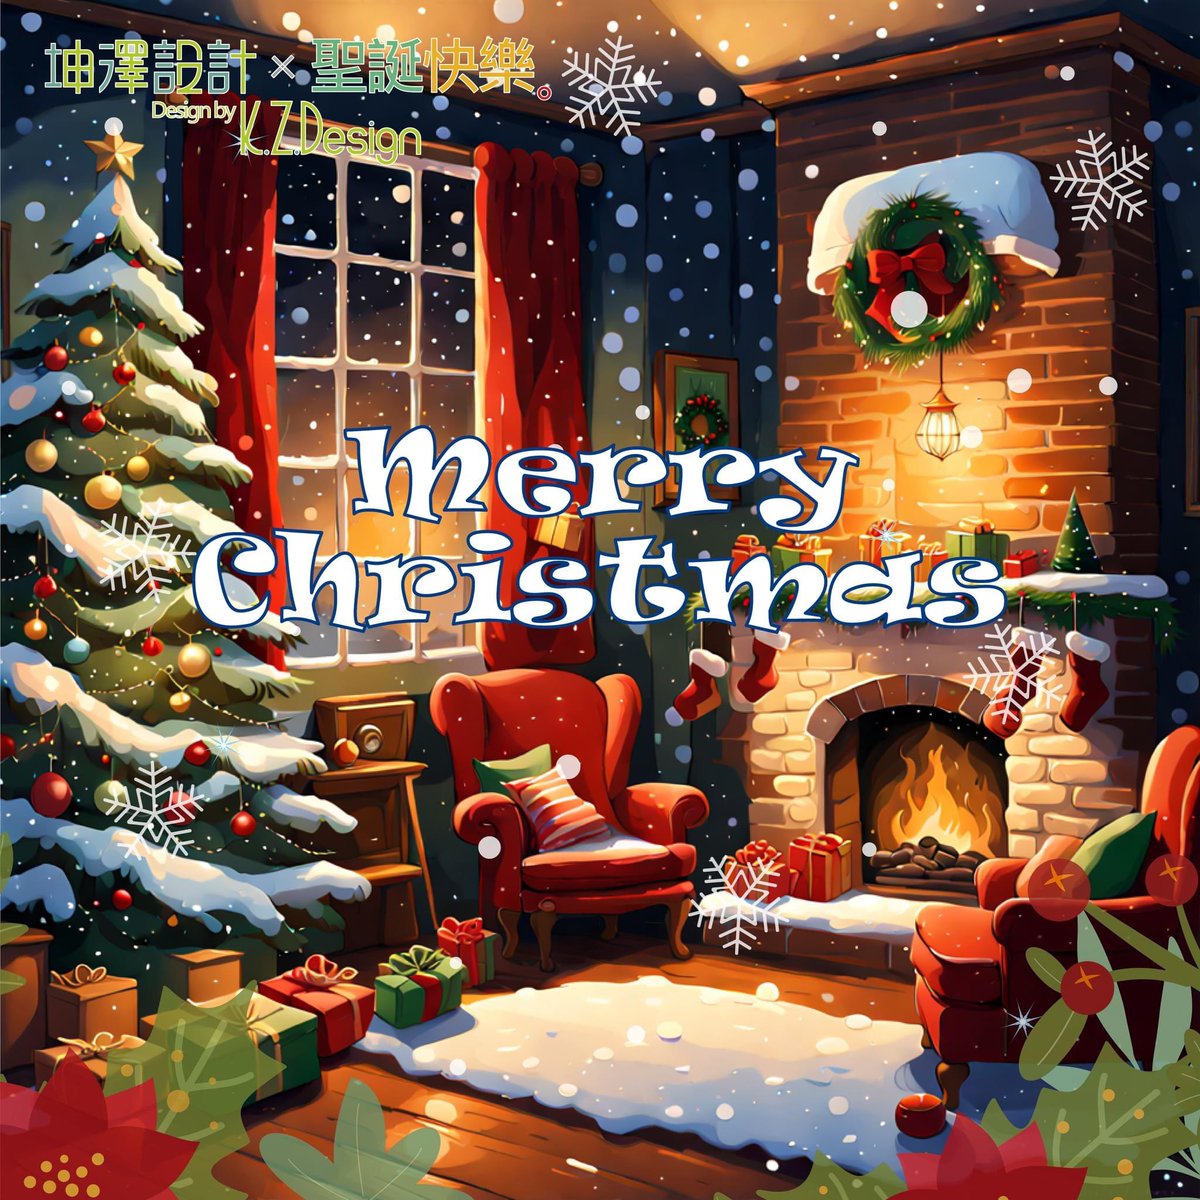 #聖誕節 到啦！
#聖誕老人 正在玩命裝禮物，
袋子裡裝得滿滿的驚喜。

他已經在飛奔到你家的路上，
把歡樂送進每個角落。
小心啦，別讓他一時興起，
把整個禮物袋都給你！
——- ——-——- ——-
#merrychristmas #happychristma #xmas #santaclaus #ai繪圖 #aiart #playground #chatgpt #bing